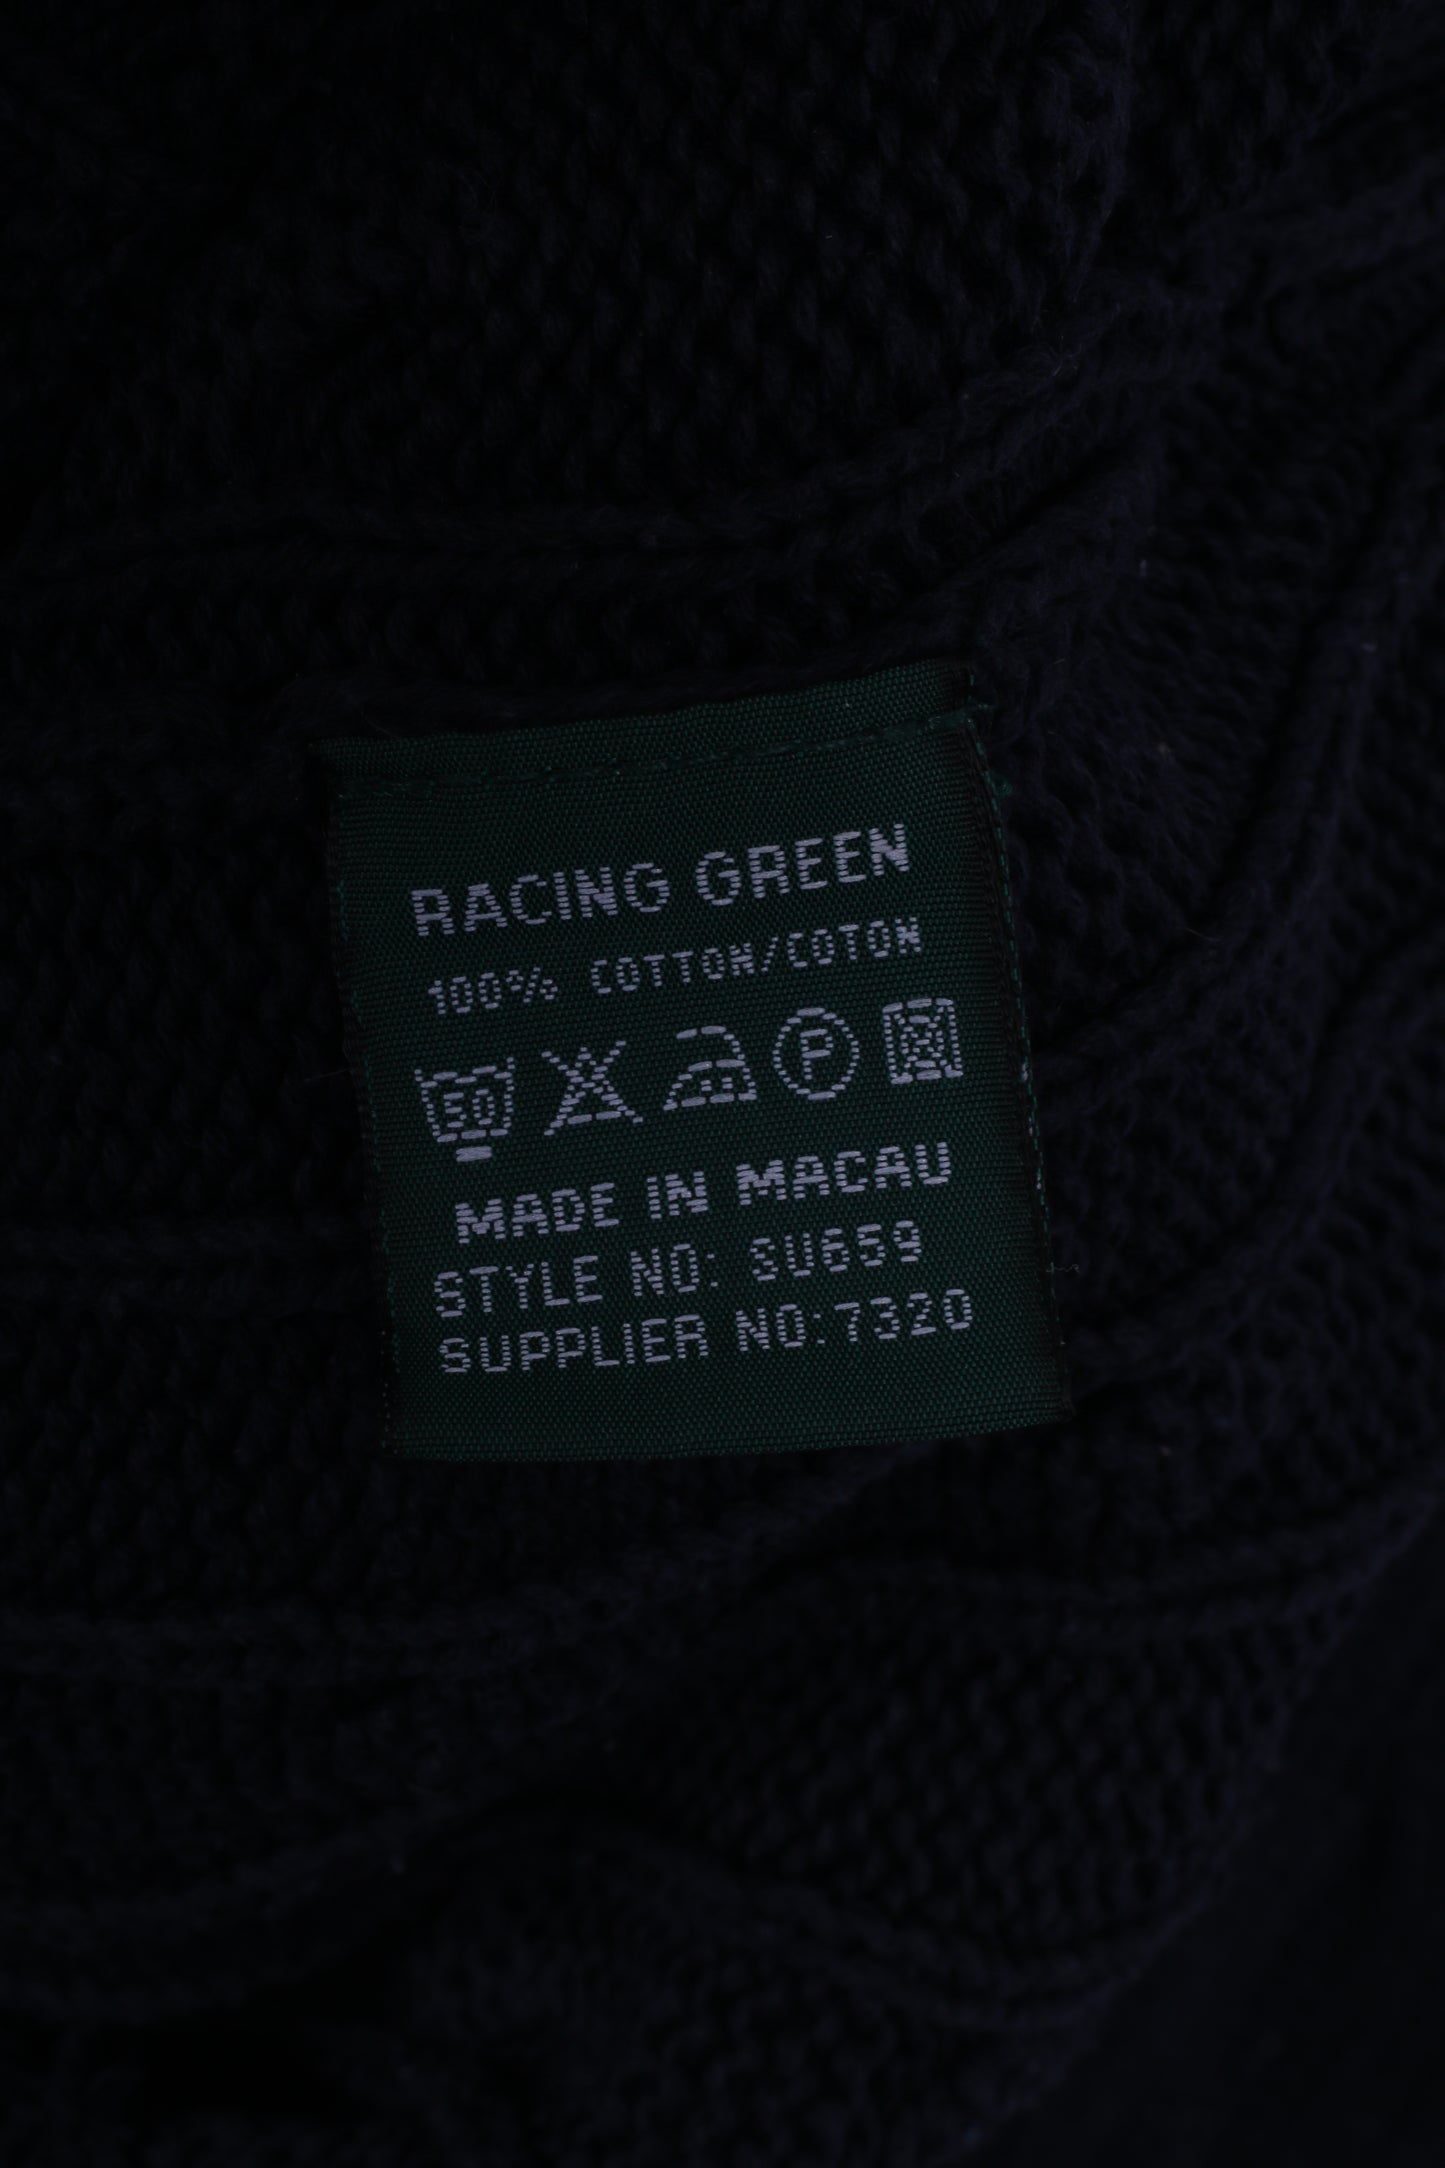 Racing Green Mens L Jumper Navy Cotton Sweater Knitt